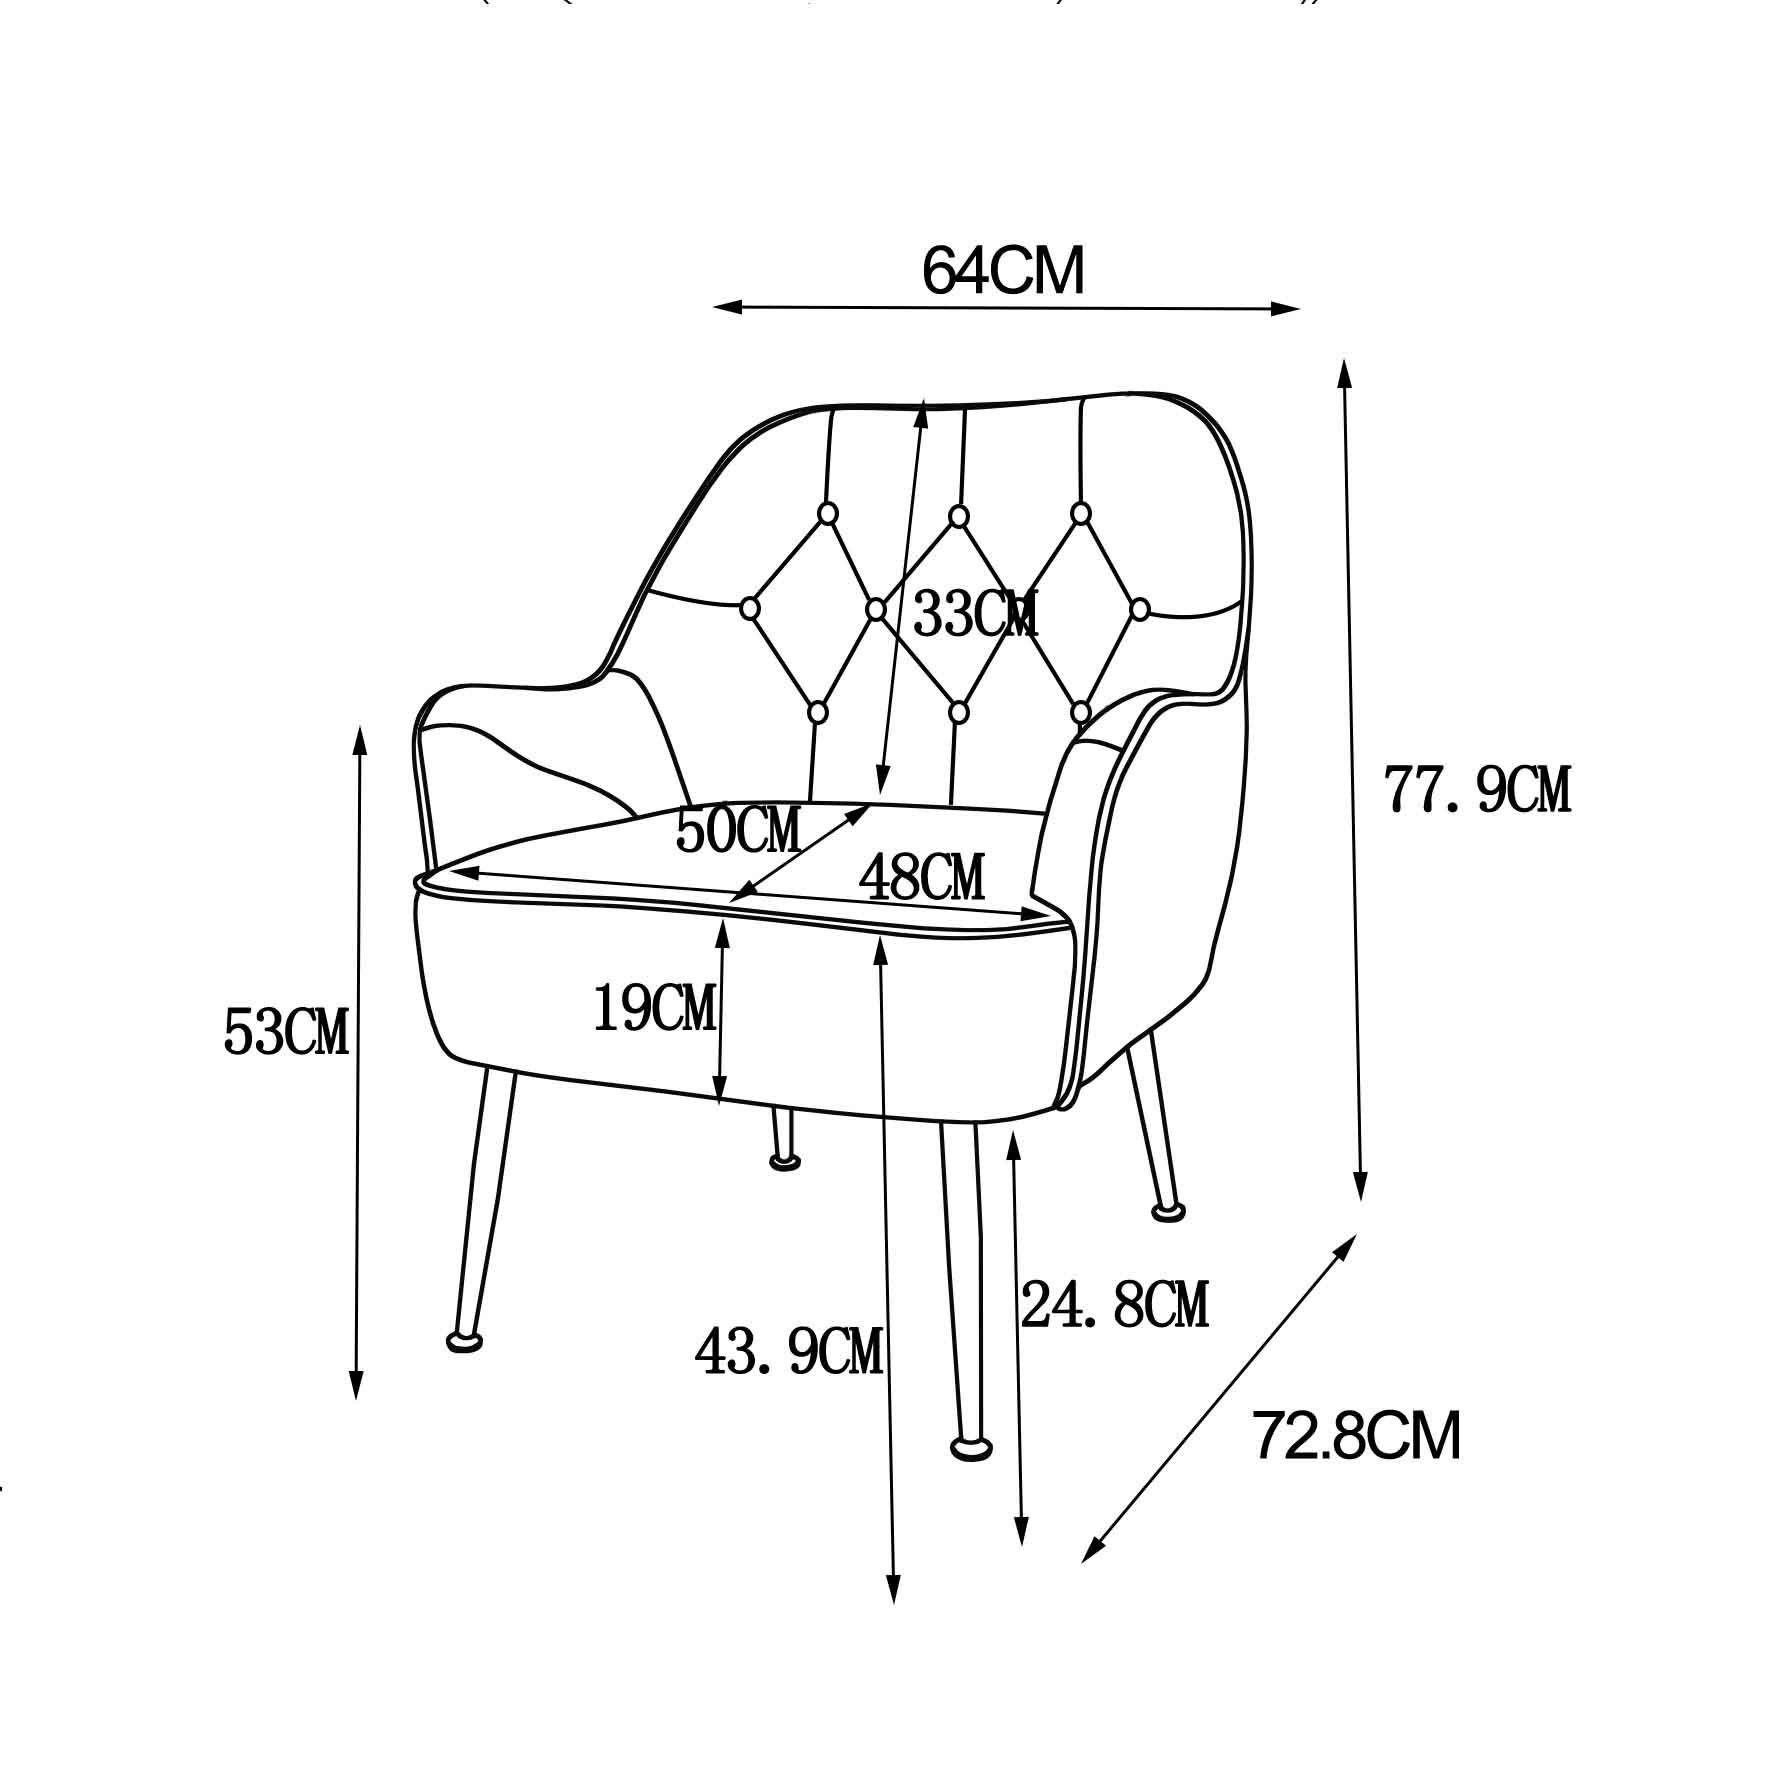 WISHDOR Loungesessel Polstersessel Relaxsessel Einzelsessel, Gepolsterte Einzelsofa (Büro Metallbeinen weiß Stuhl), Stuhl Kaffee mit Gepolsterte Stuhl Einzelsofa Freizeit